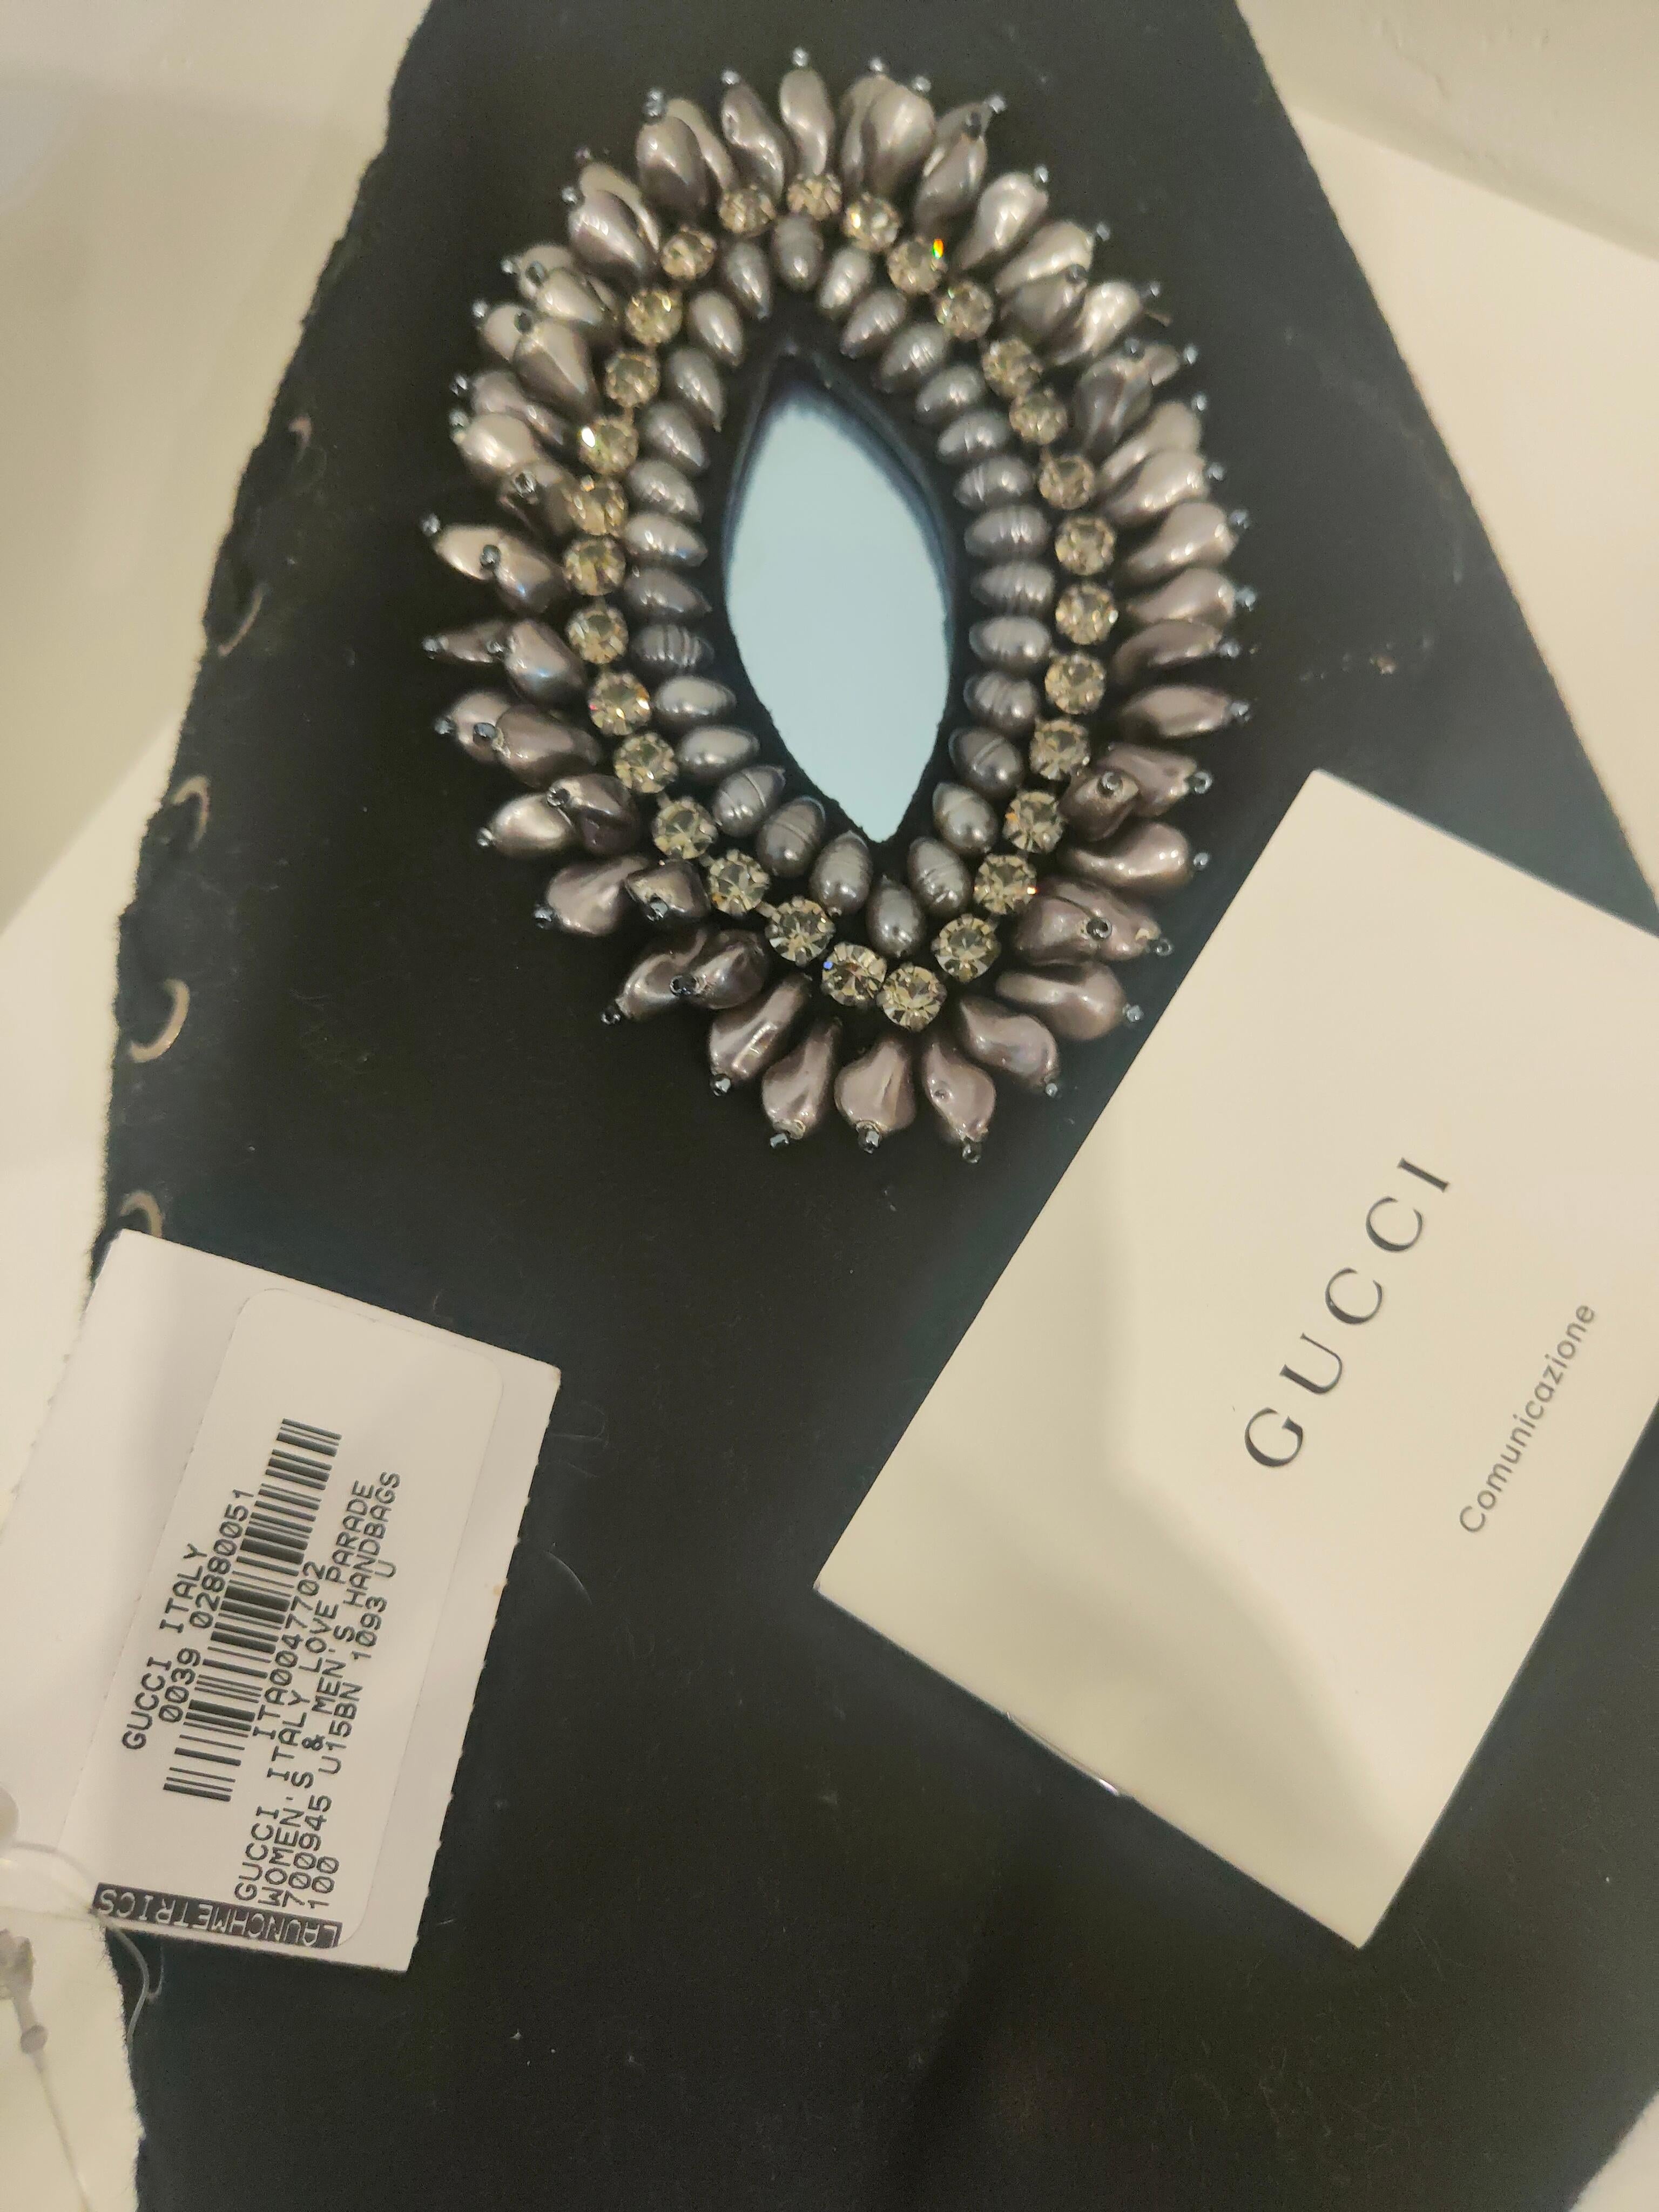 Gucci Love Parade Collectional sac noir avec pierres Swarovski et perles
Entièrement fabriqué en Italie
Dimensions : 27*16 cm 

